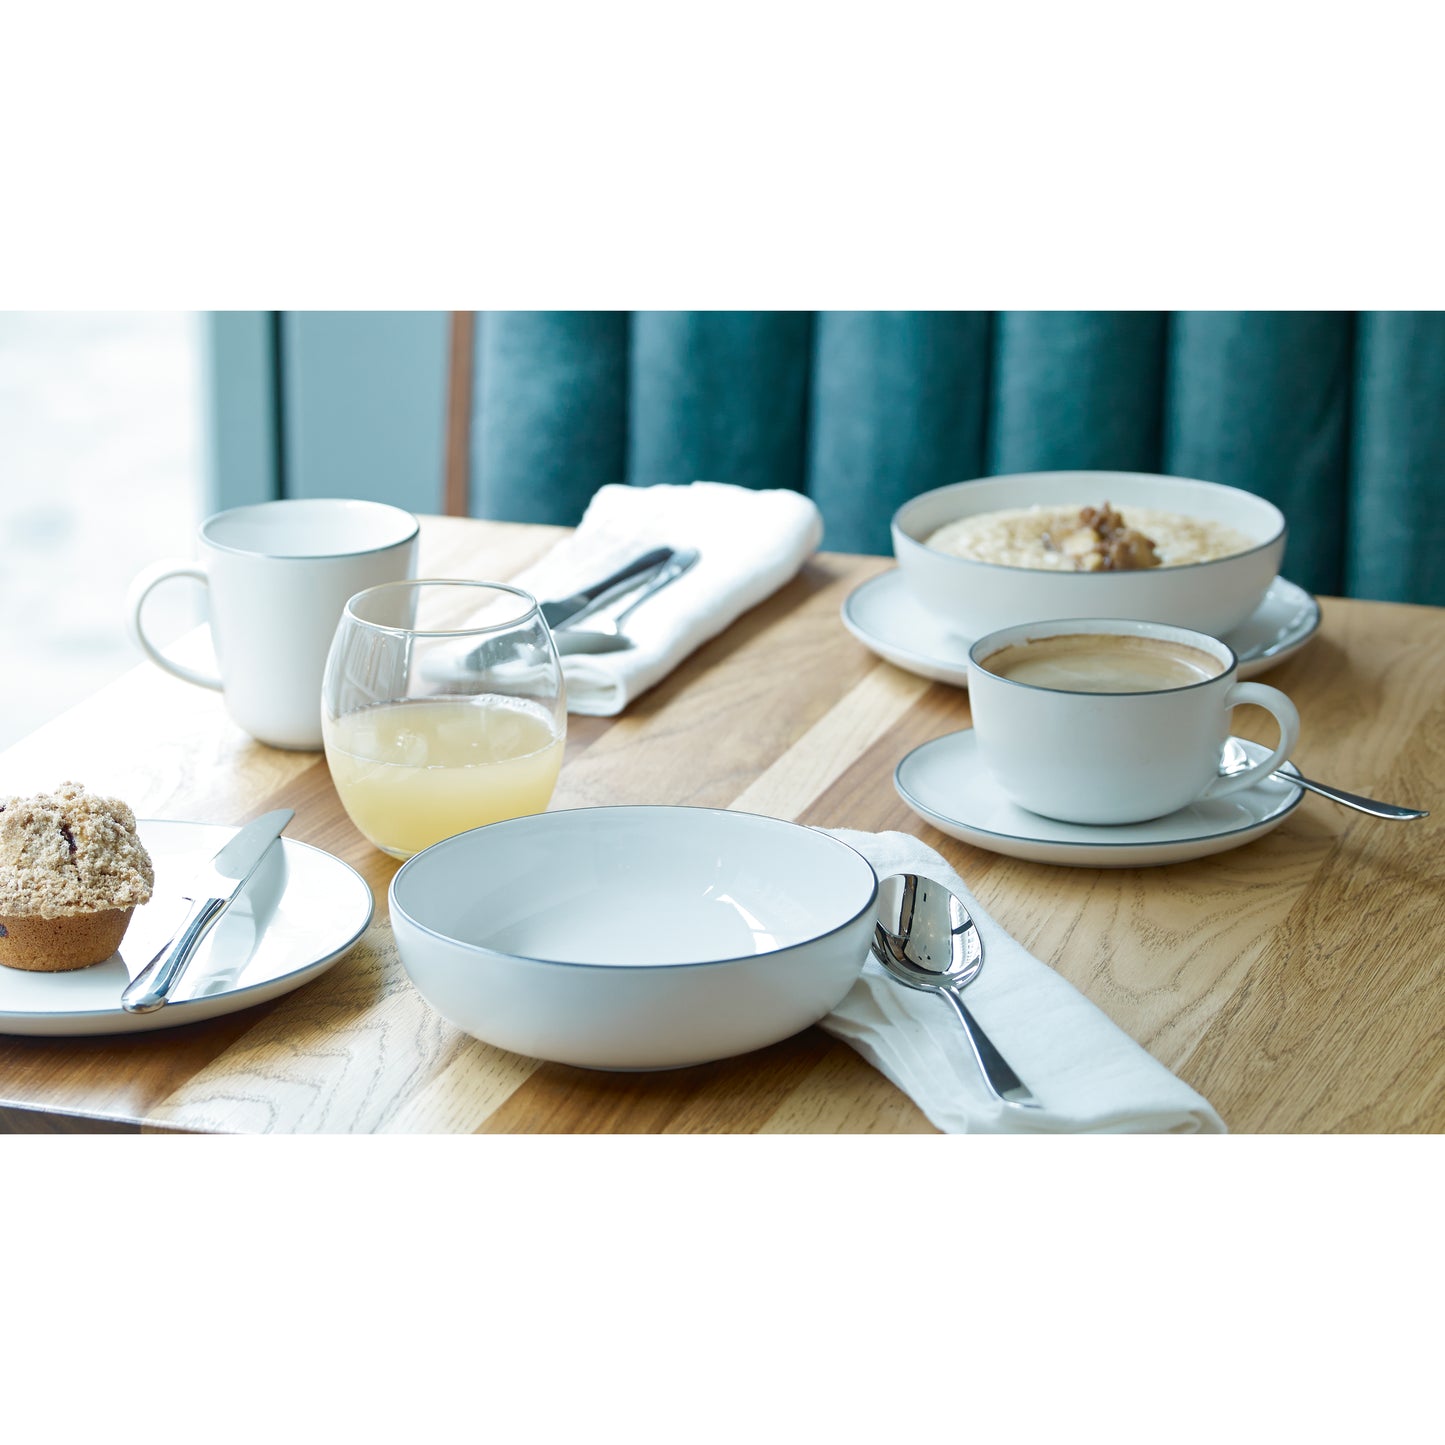 Royal Doulton Gordon Ramsay Bread Street Kitchen Dinnerware Set White, 16 Piece Set